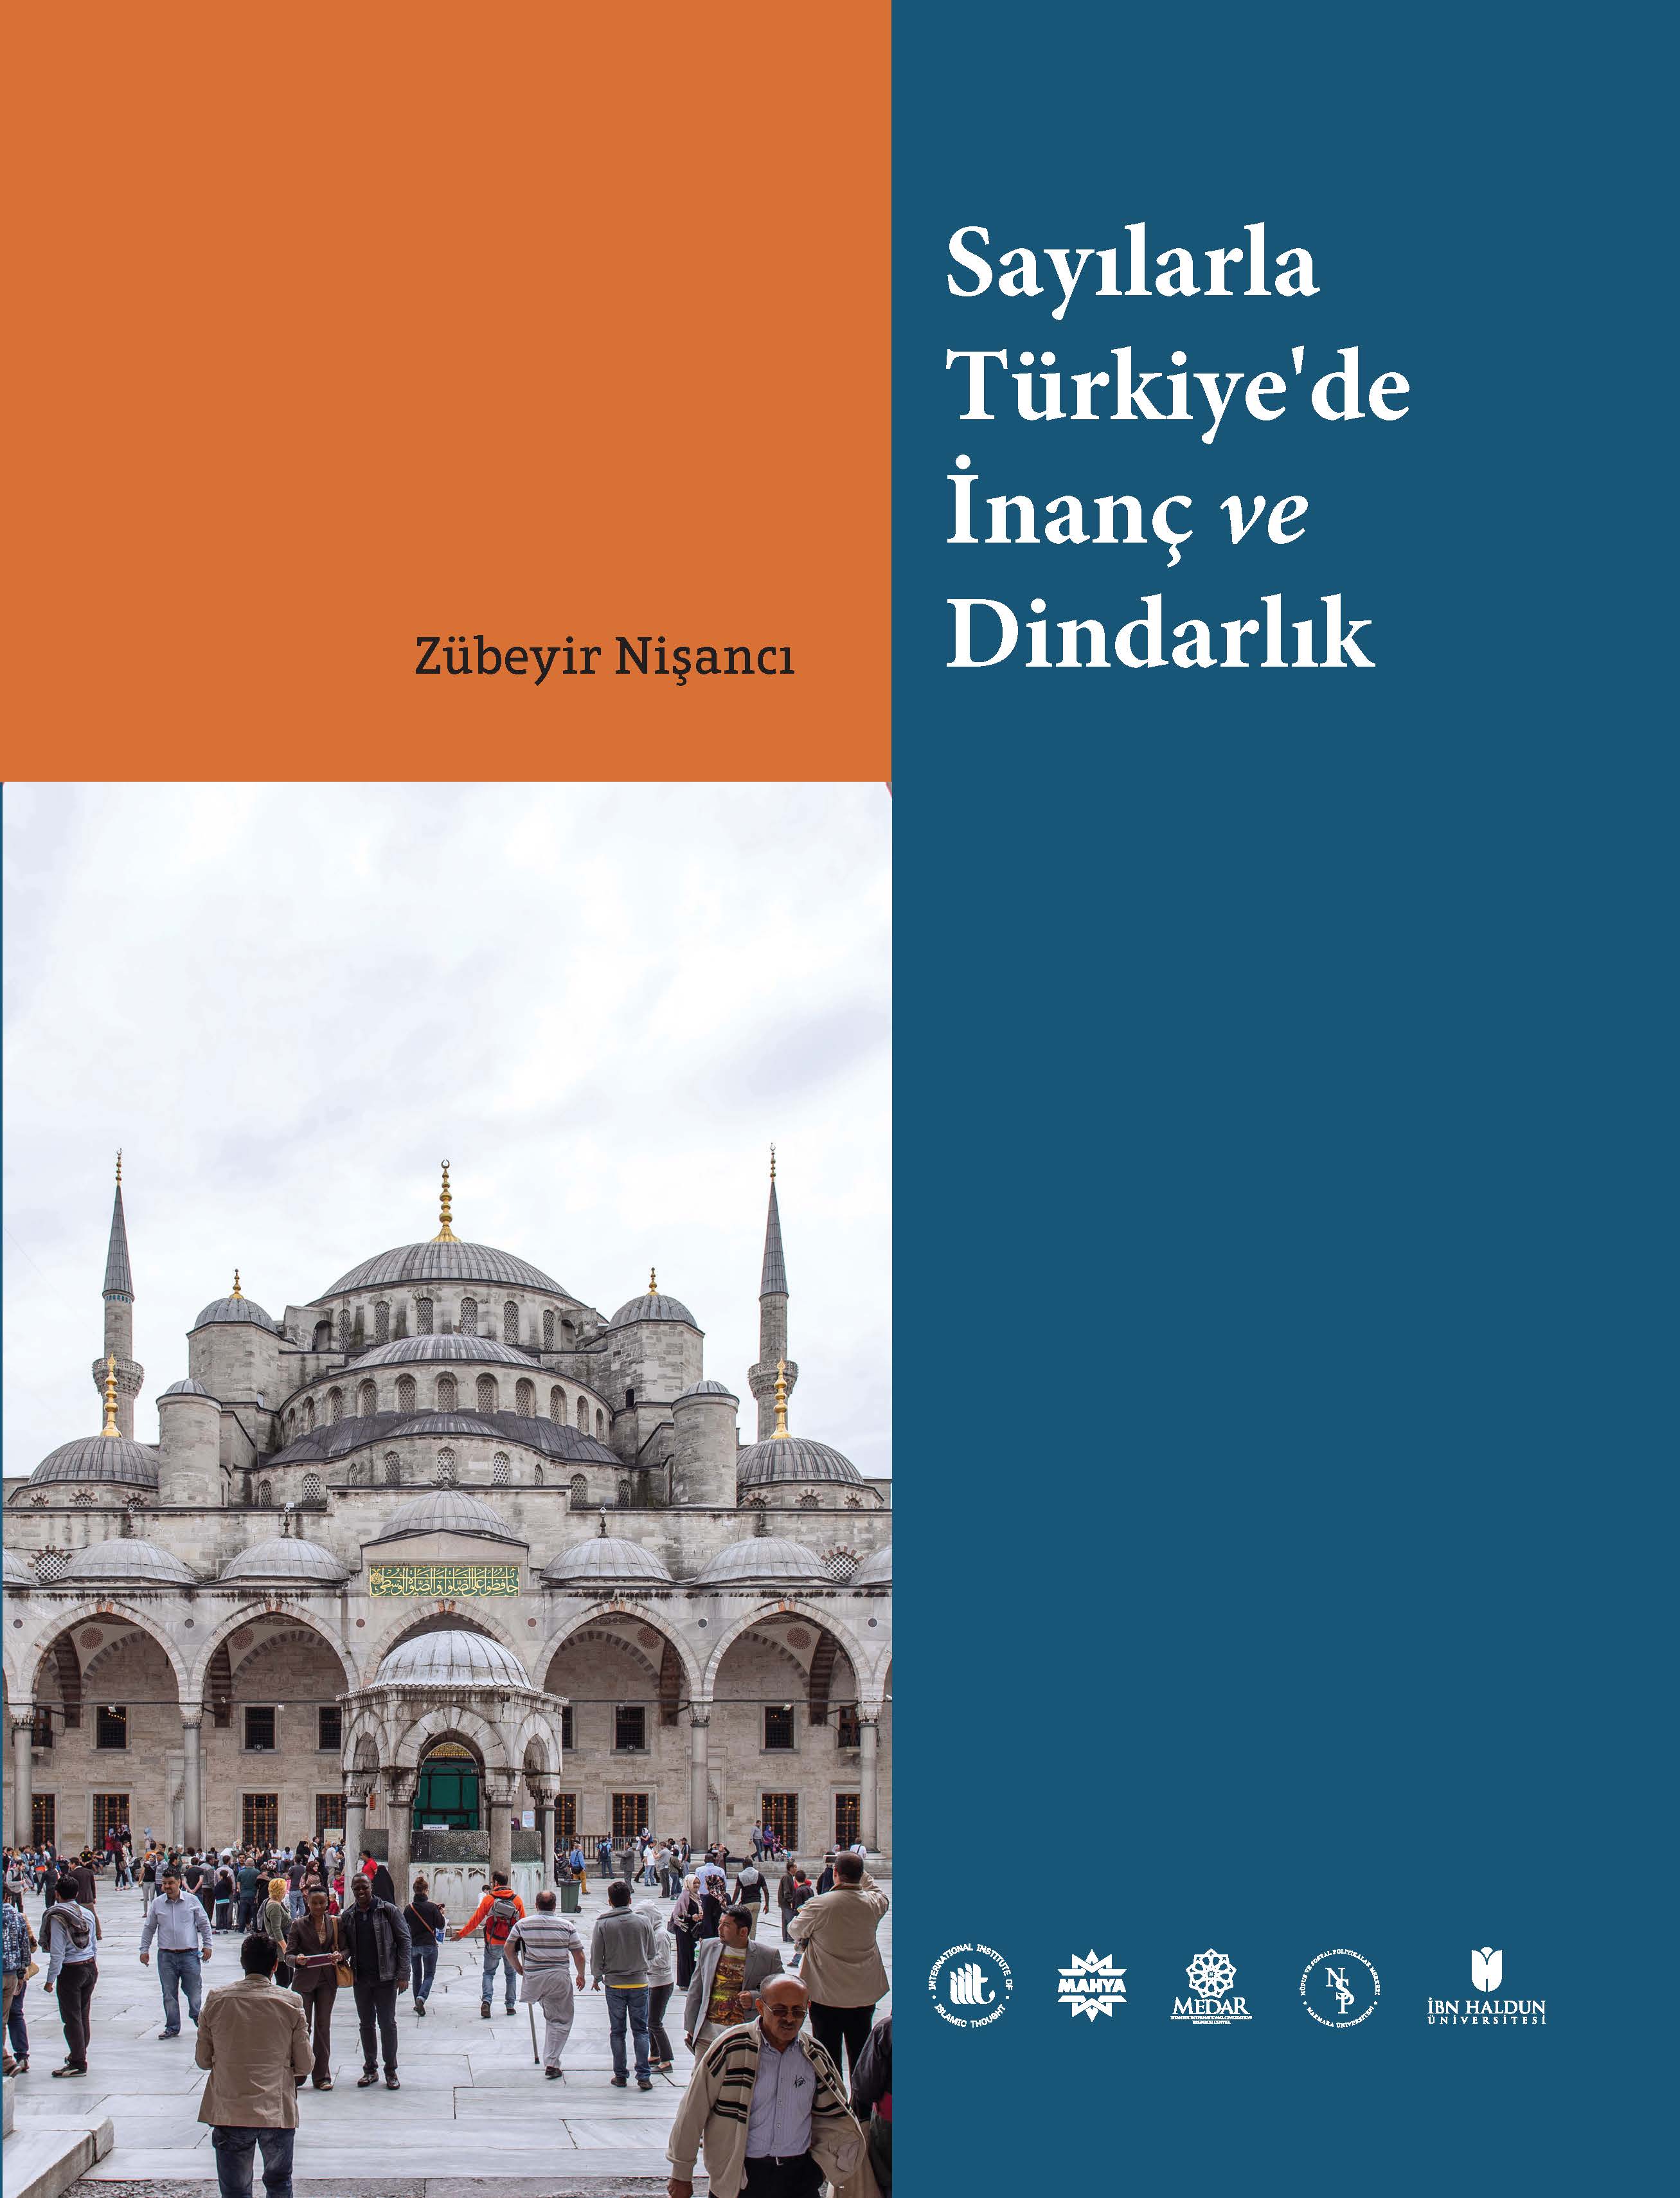 Turkish: Sayılarla Türkiye’de İnanç ve Dindarlık (Faith and Religiosity in Türkiye)